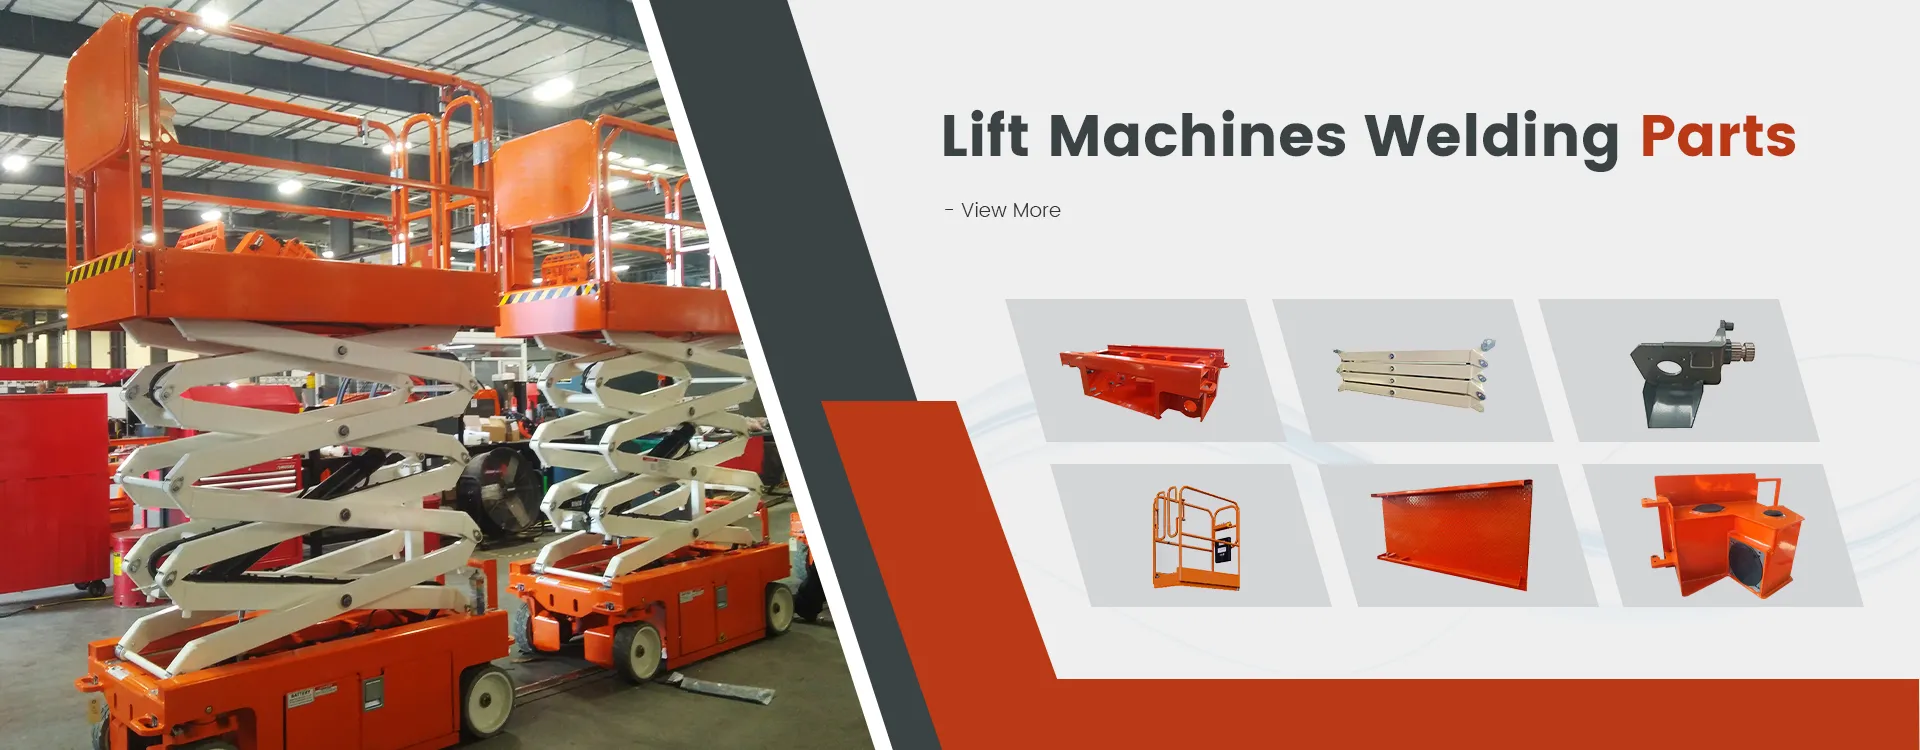 Lift Machines Welding Parts